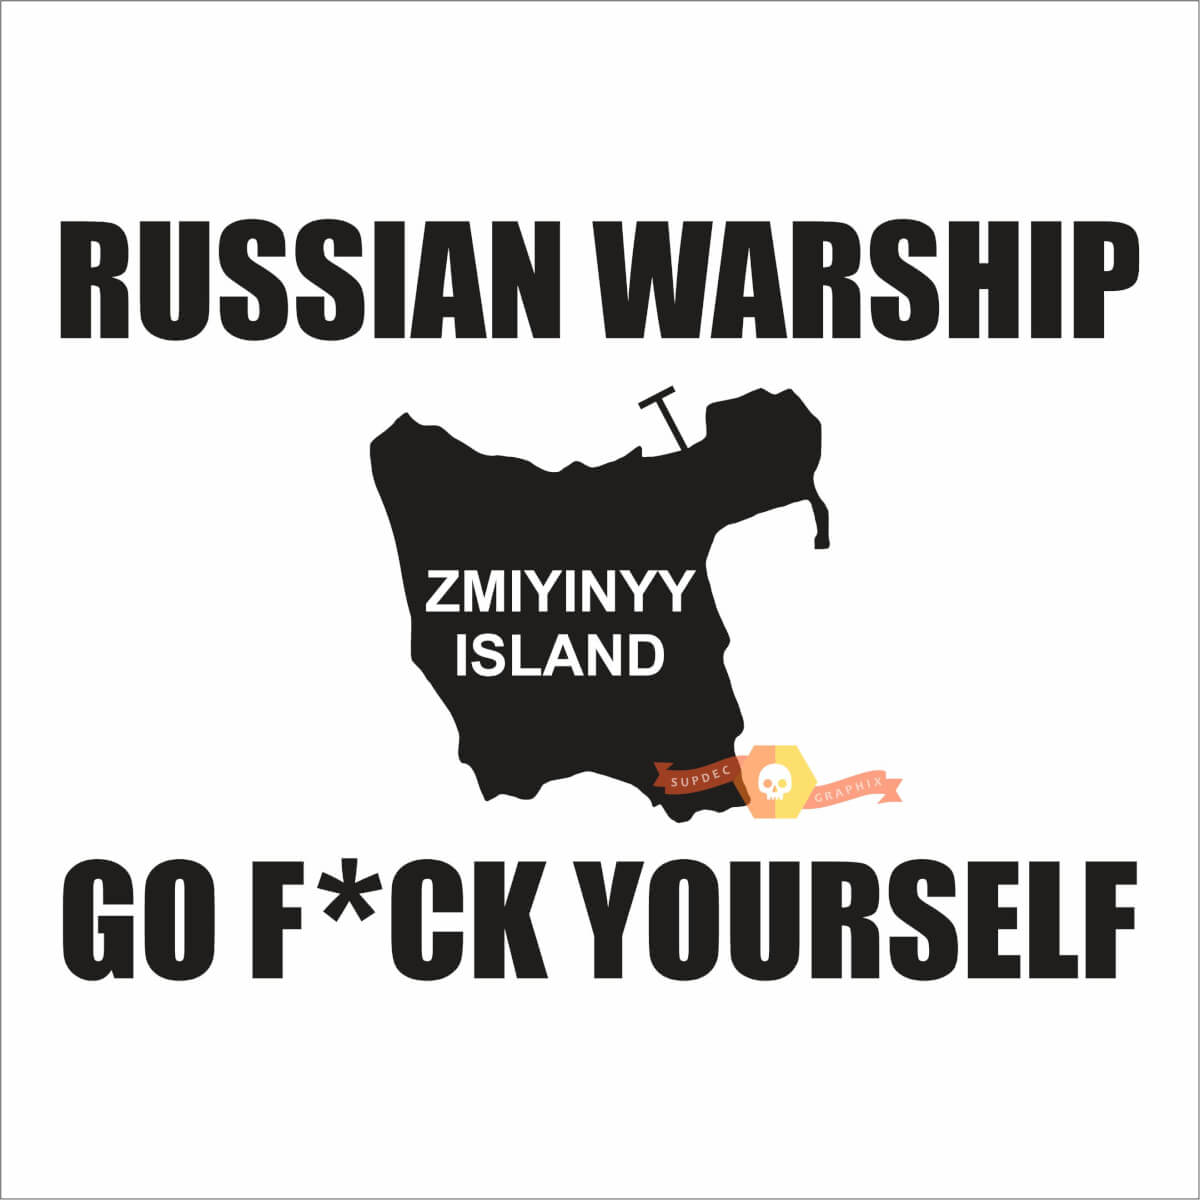 Russisches Kriegsschiff, fick dich, ukrainischer Slogan Snake Island
